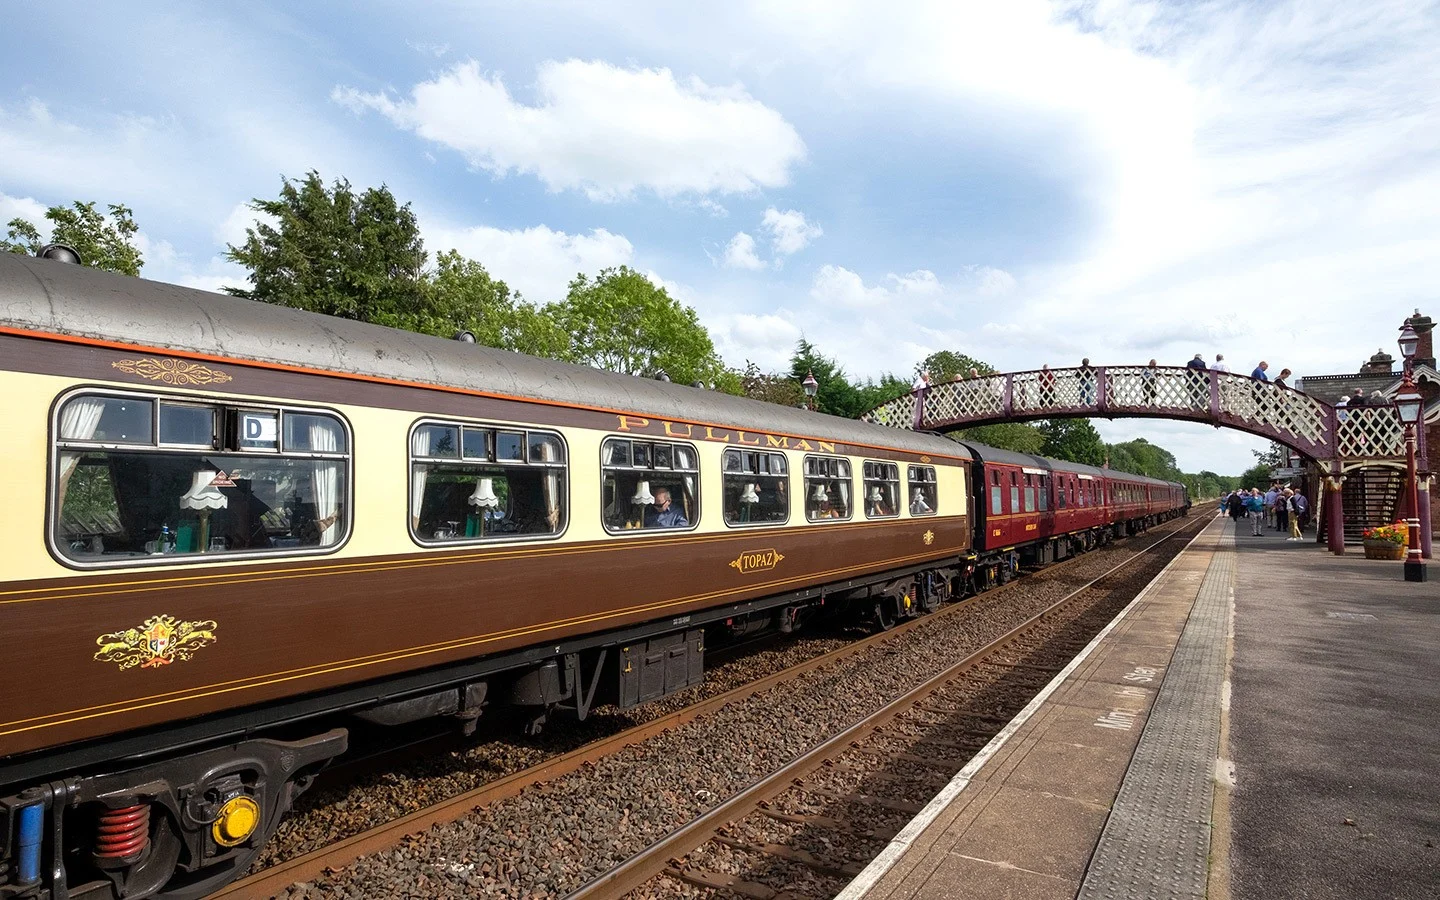 Steam Dreams: The Settle to Carlisle railway by steam train